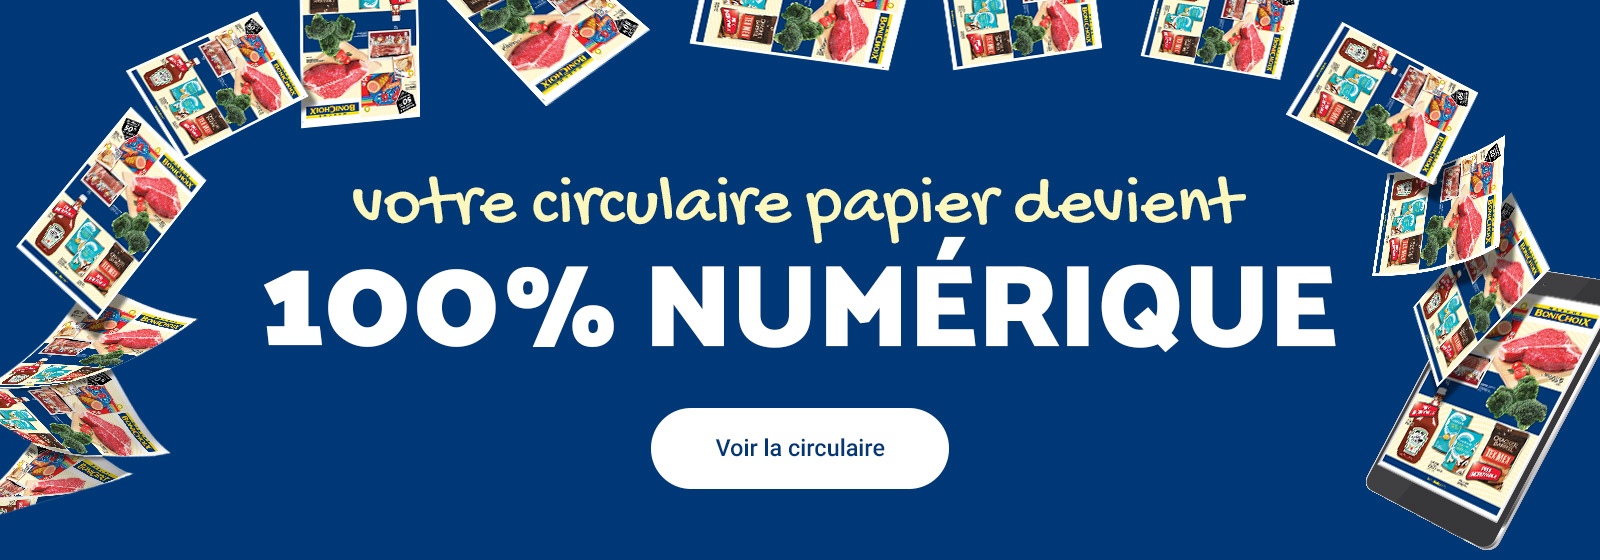 L'image suivante est constituée du texte, "Votre circulaire papier devient 100% Numérique, Voir la circulaire."